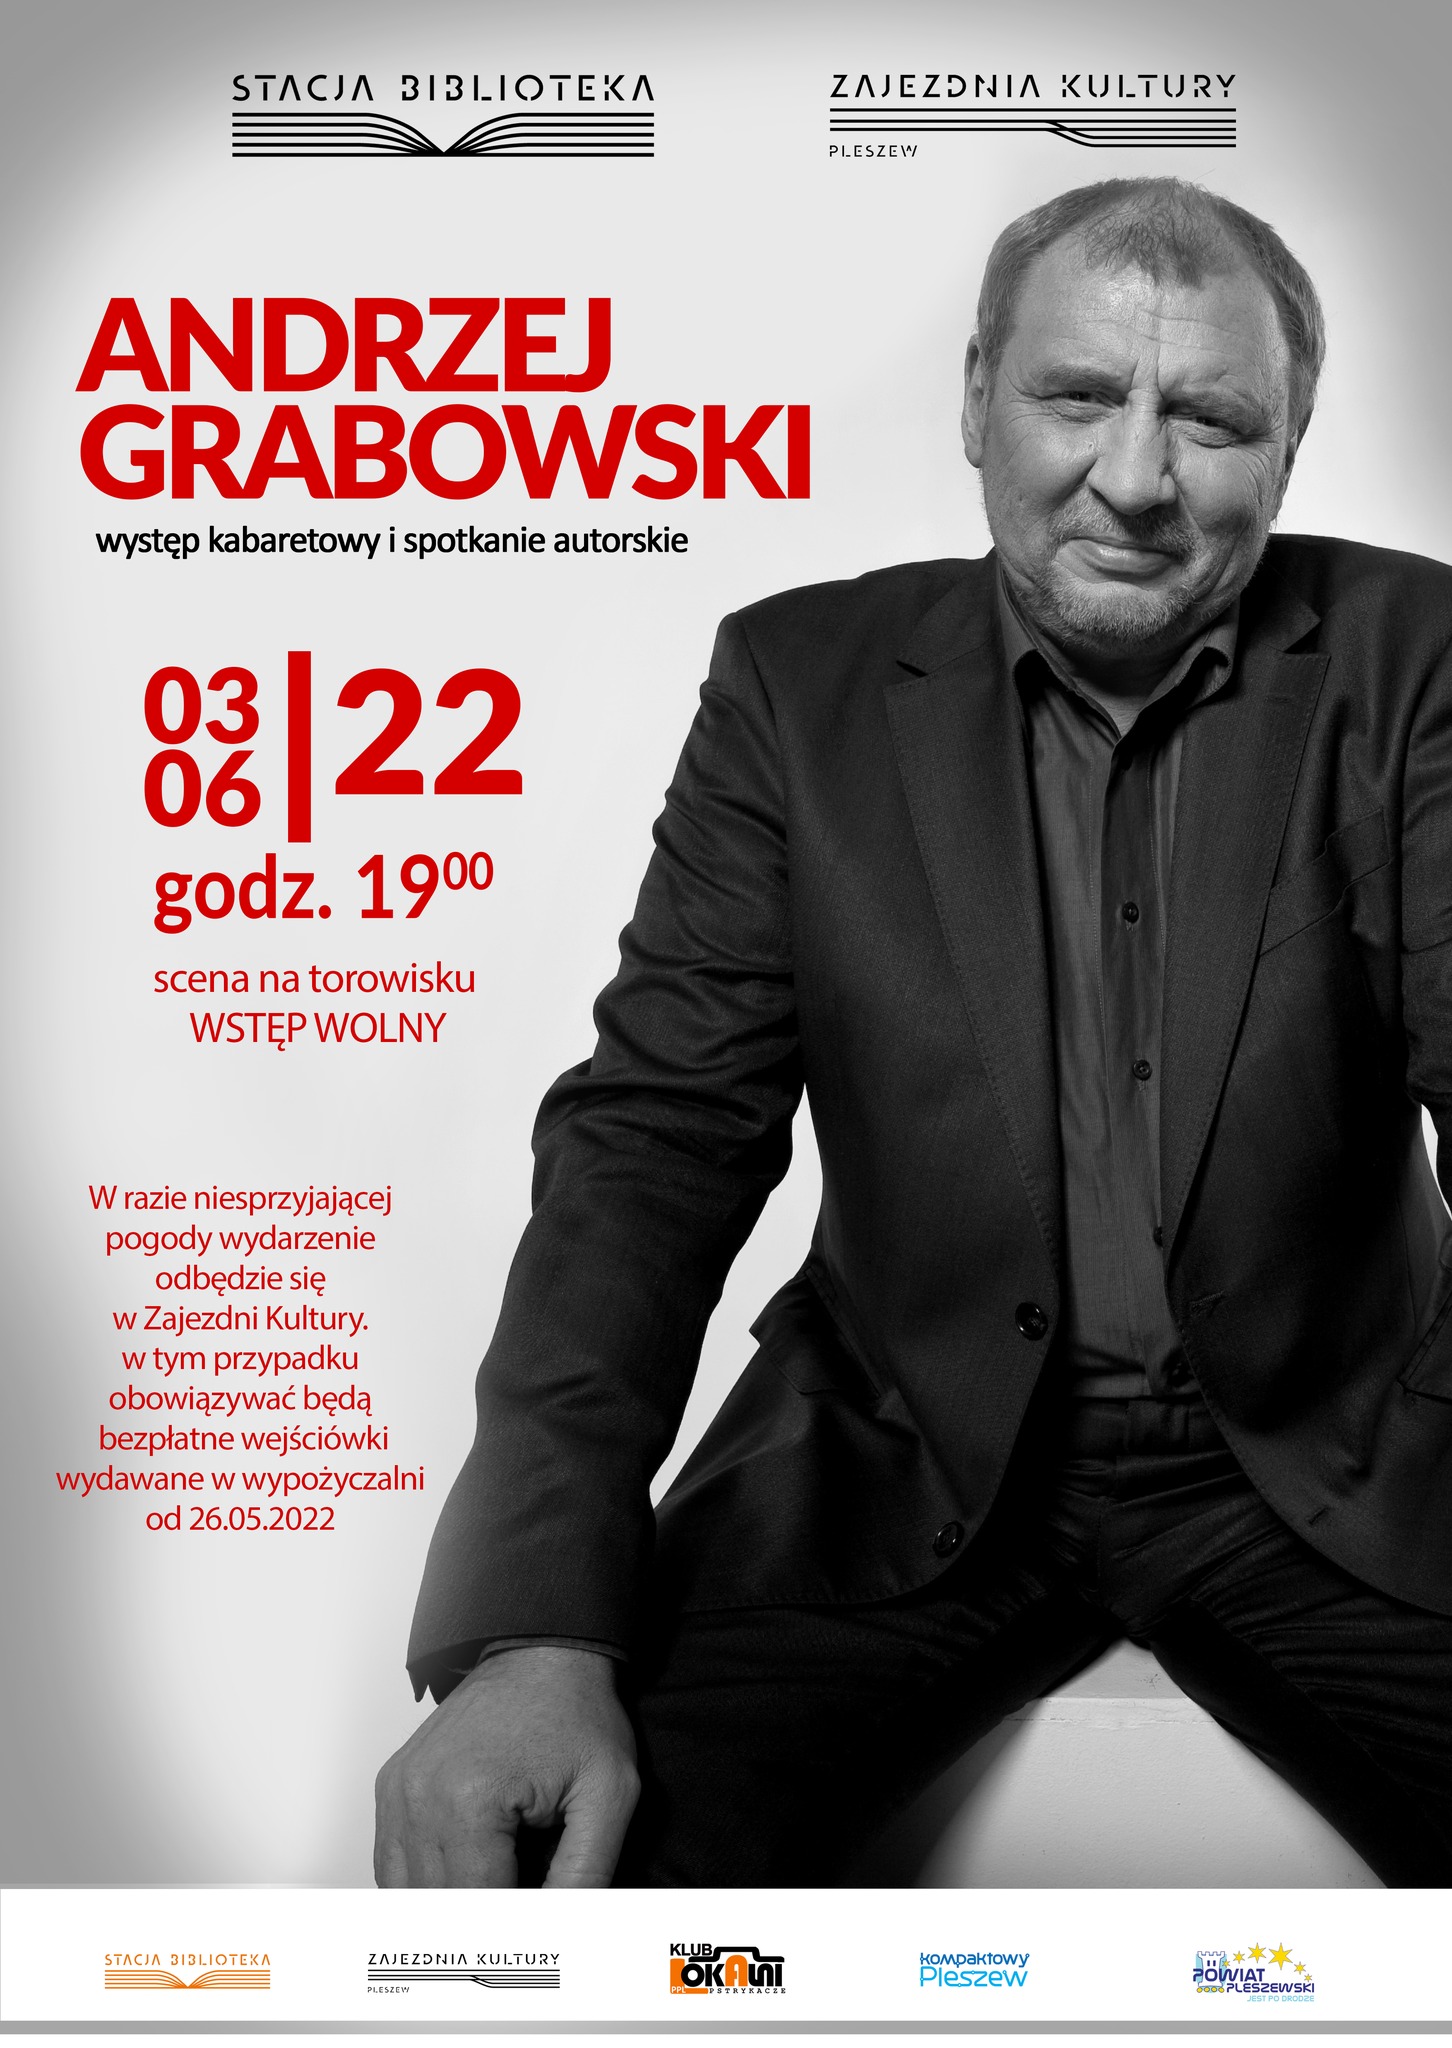 plakat przedstawia szczegóły wydarzenia z Andrzejem Grabowskim